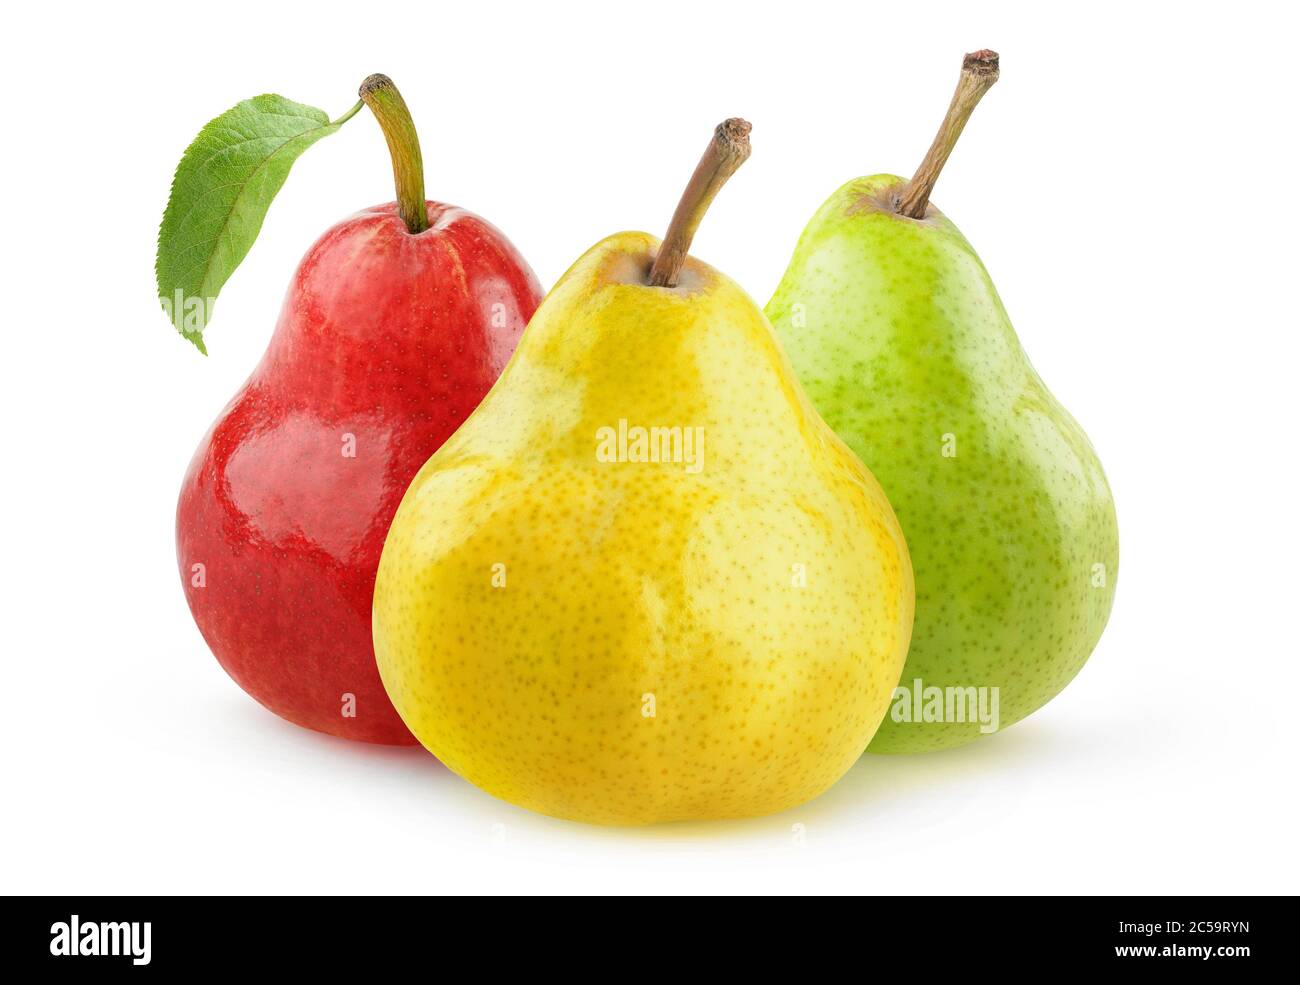 Fruits de poire isolés. Poires jaunes, vertes et rouges isolées sur fond blanc Banque D'Images